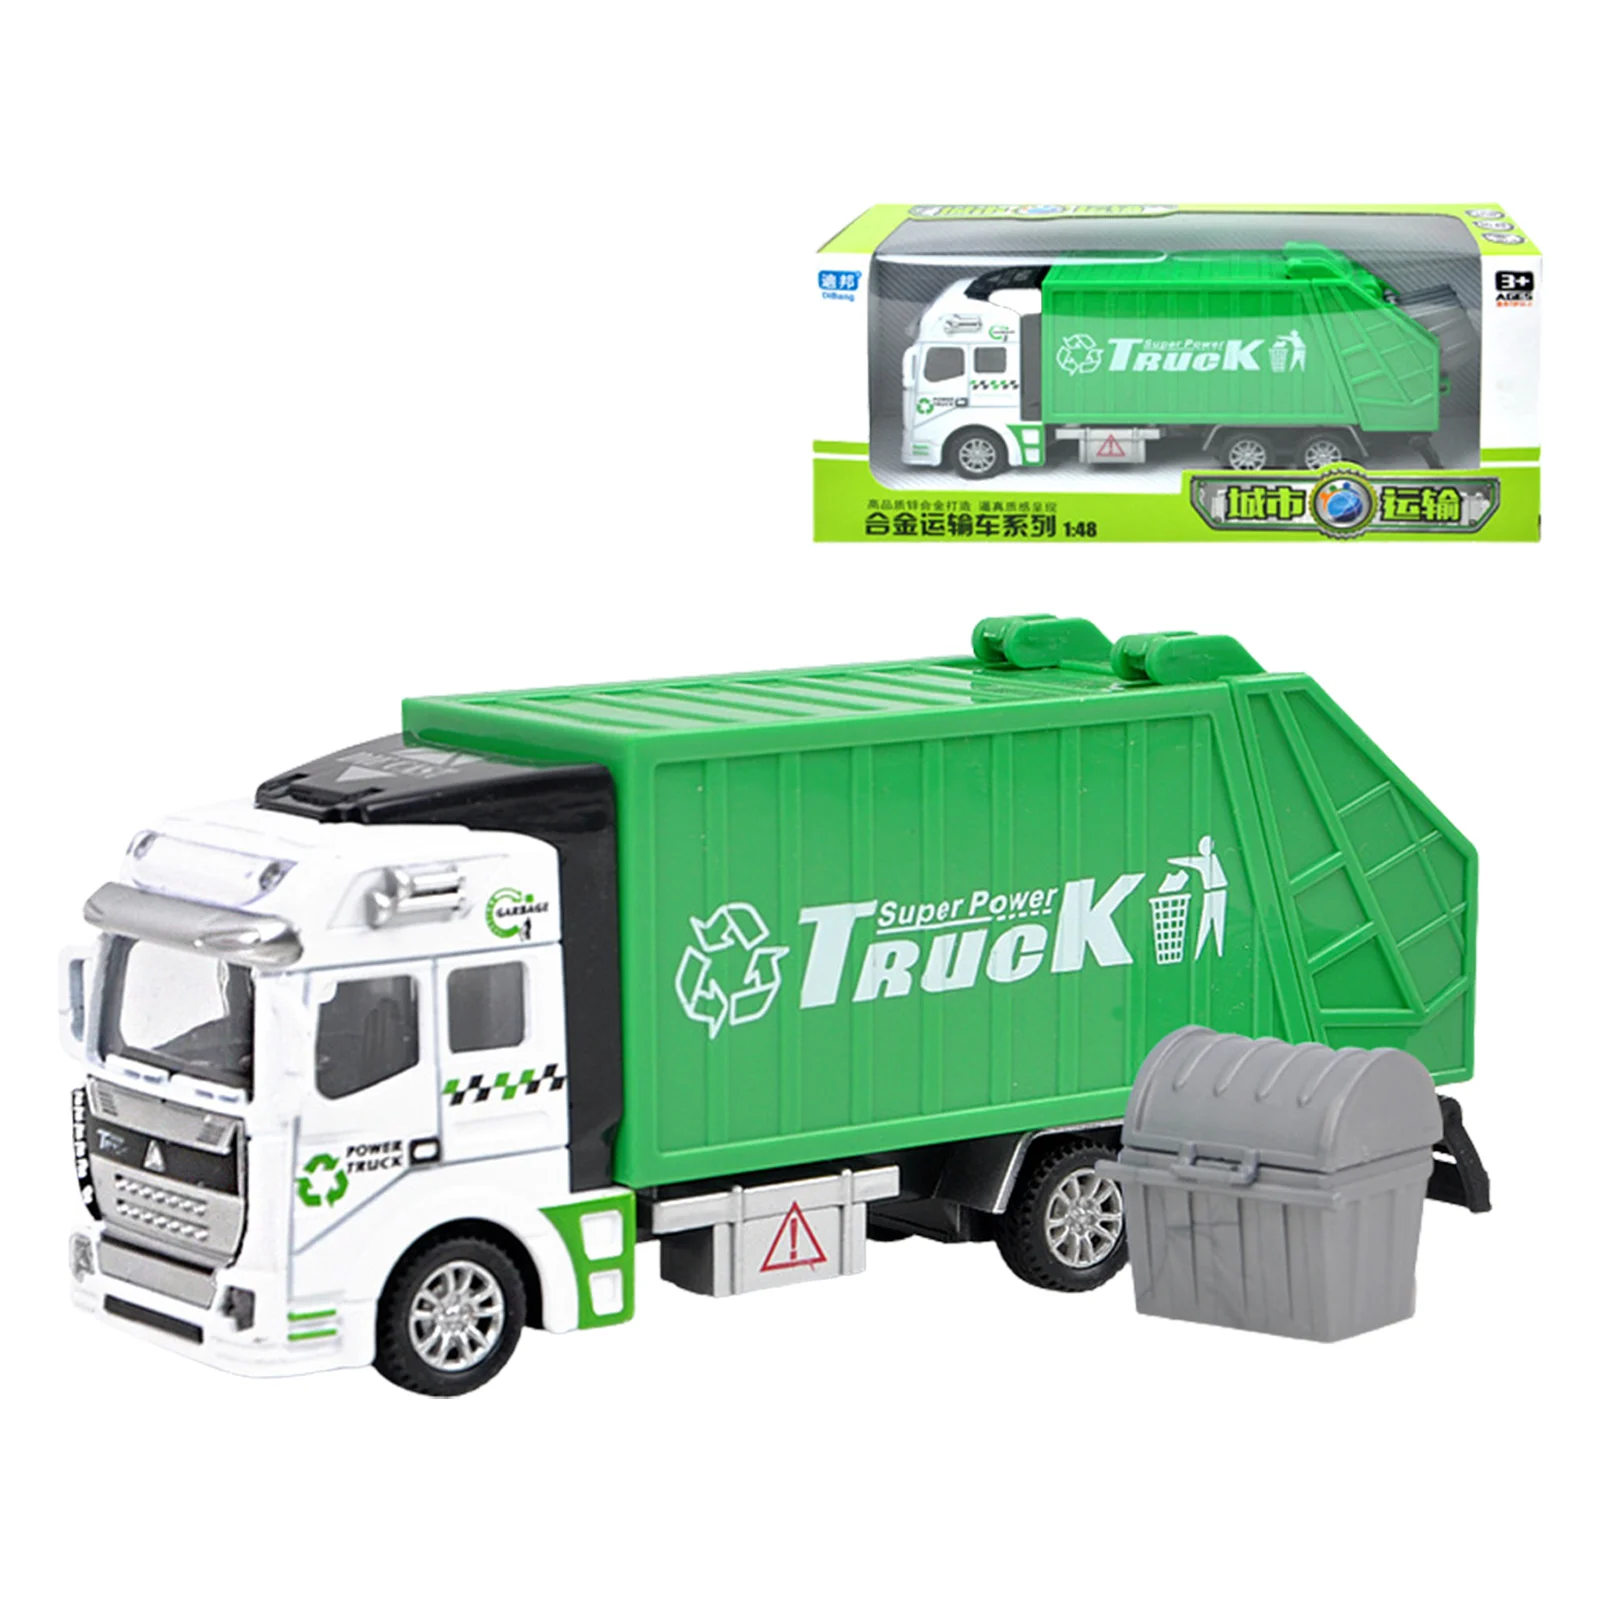 

Модель грузовика для мусора, долговечный грузовик для утилизации отходов, игрушечный детский любимый игрушечный автомобиль с функцией отвода